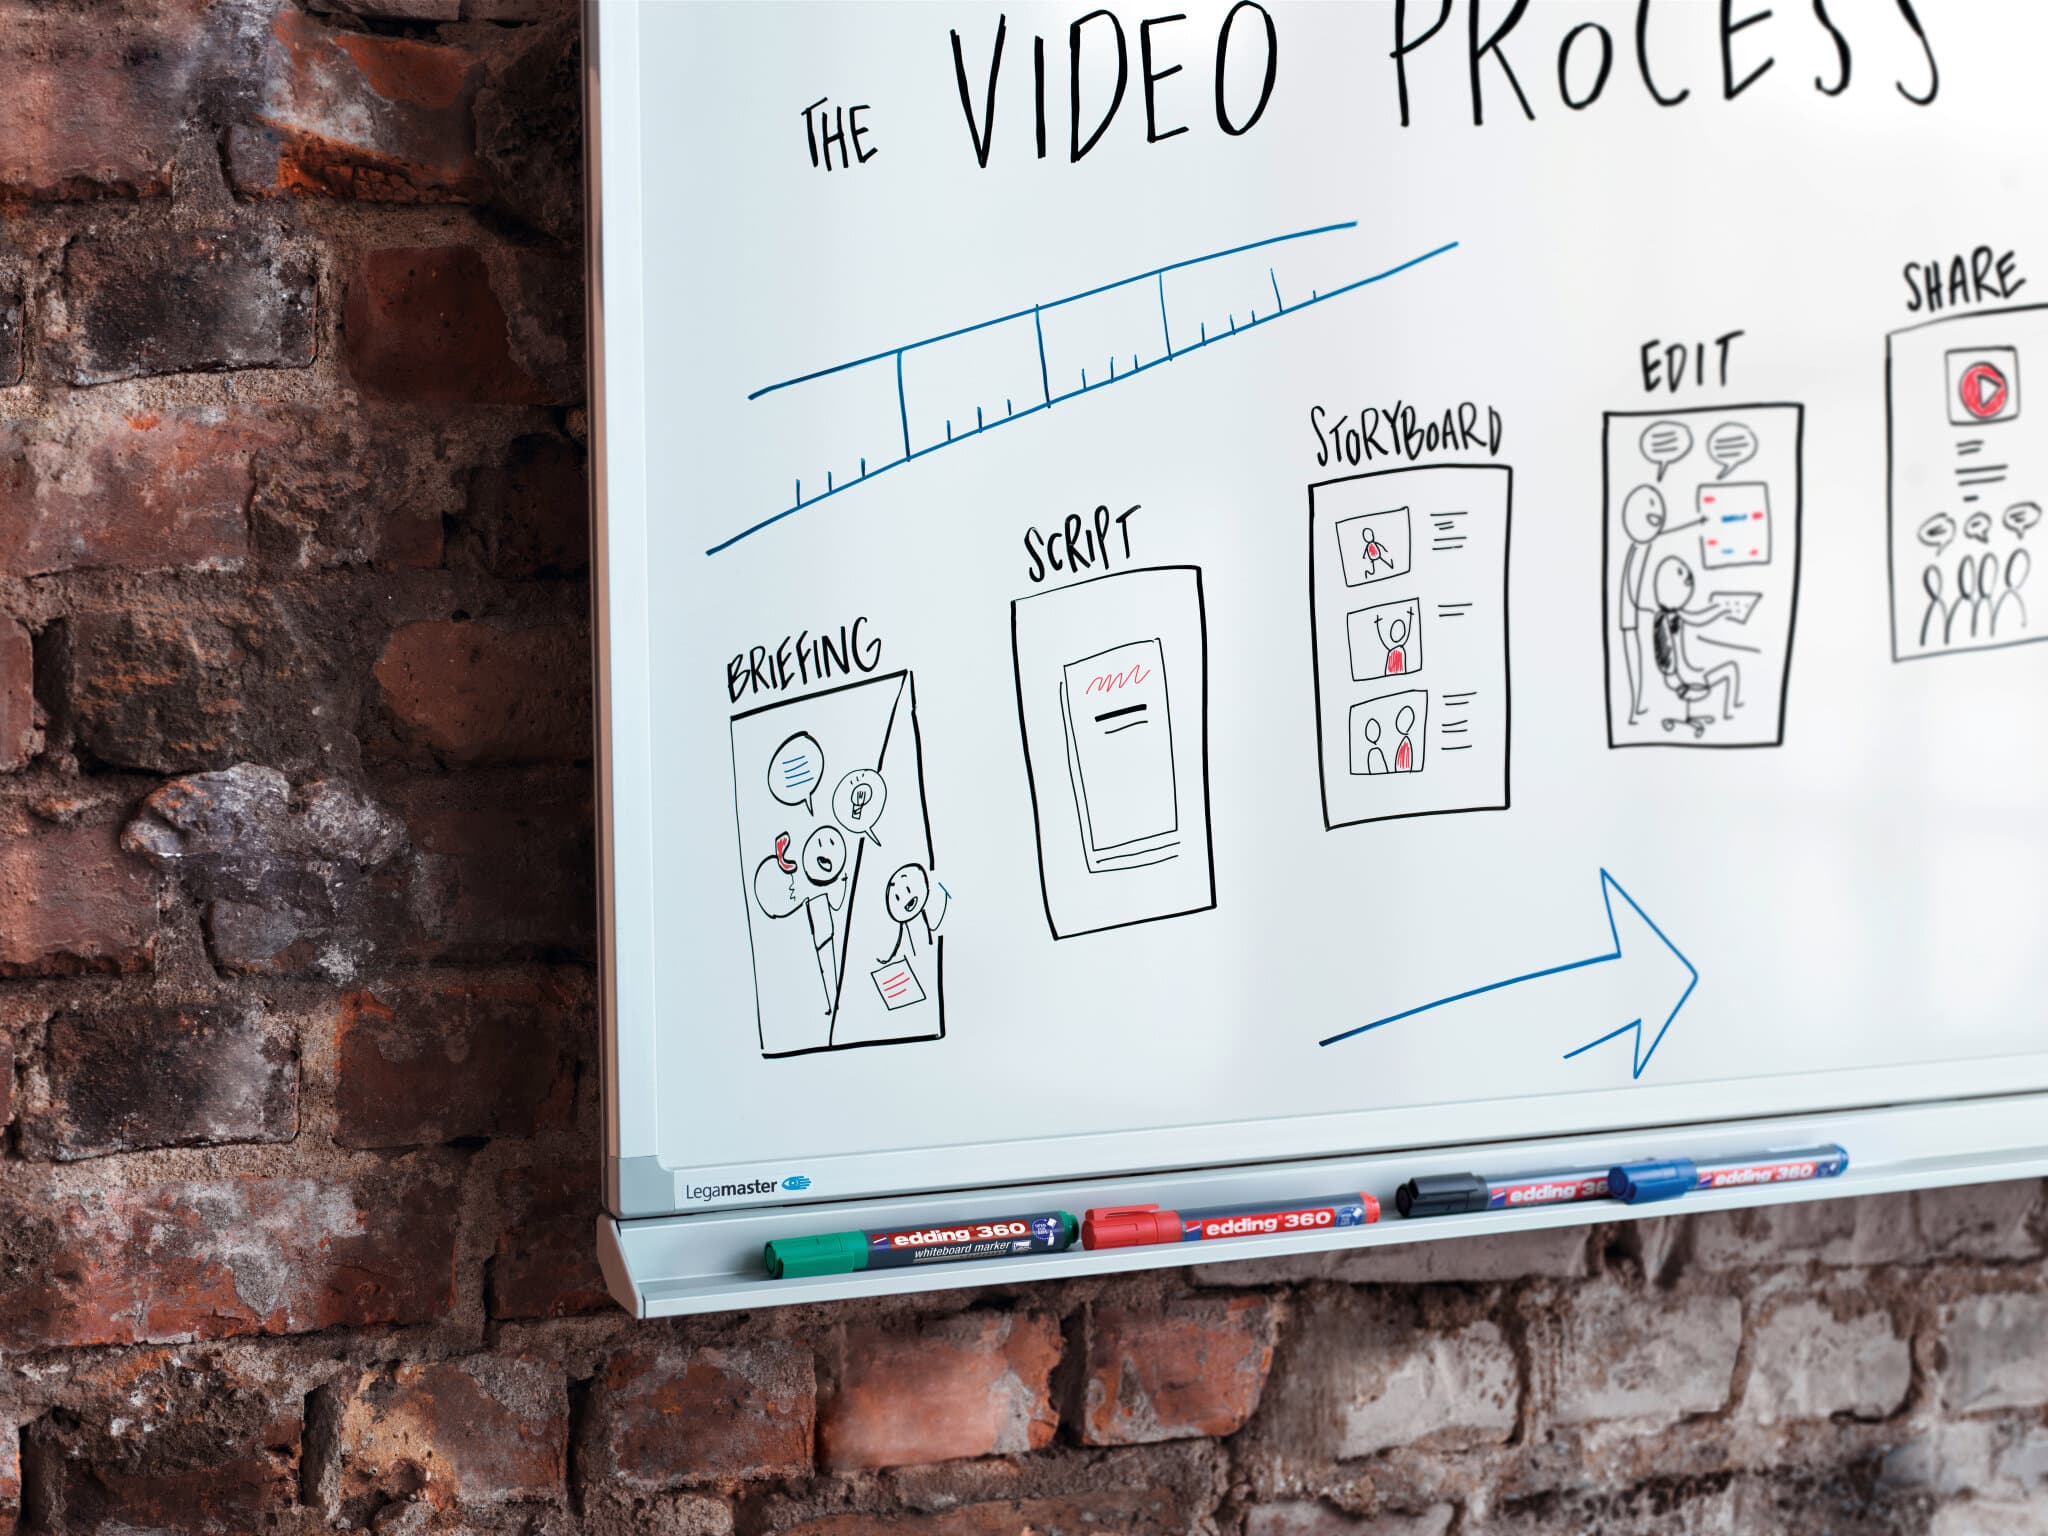 Das Edding Whiteboard skizziert die Phasen des Videoproduktionsprozesses und enthält Illustrationen und Notizen für Briefing, Drehbuch, Storyboard, Bearbeitung und Weitergabe mit dem nachfüllbaren Marker von edding.